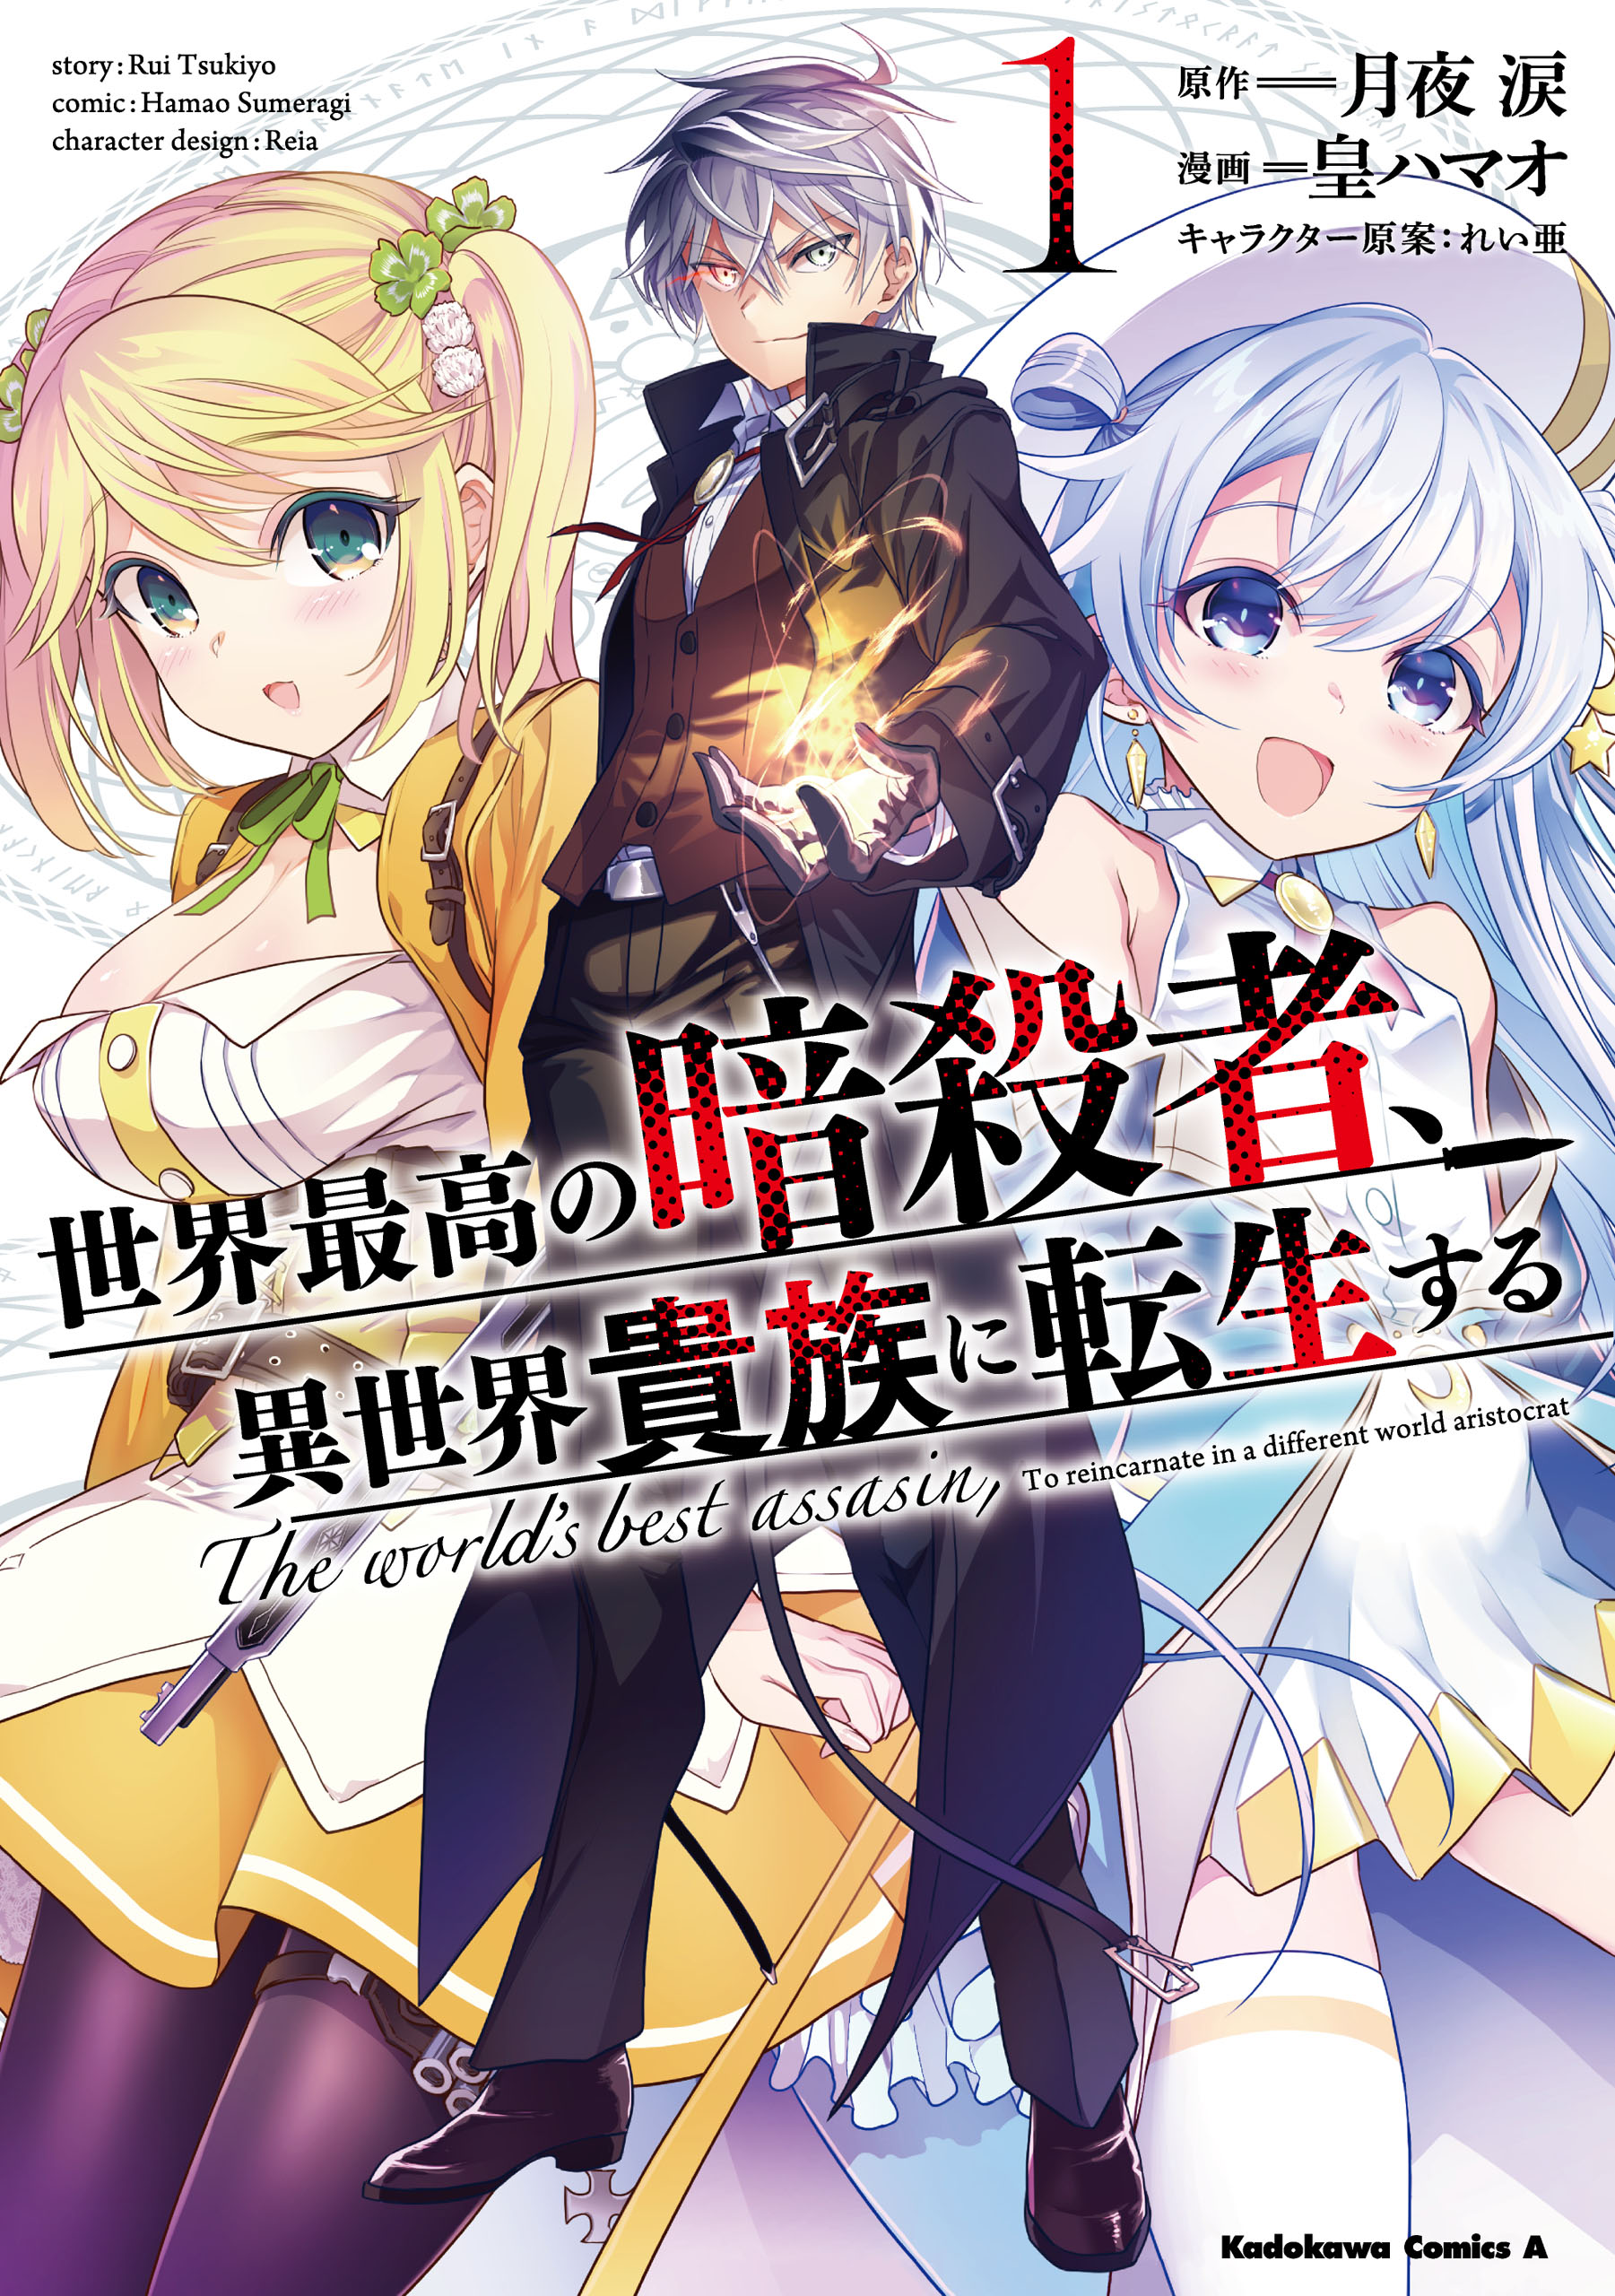 Light Novel Volume 7, The World's Finest Assassin Wiki